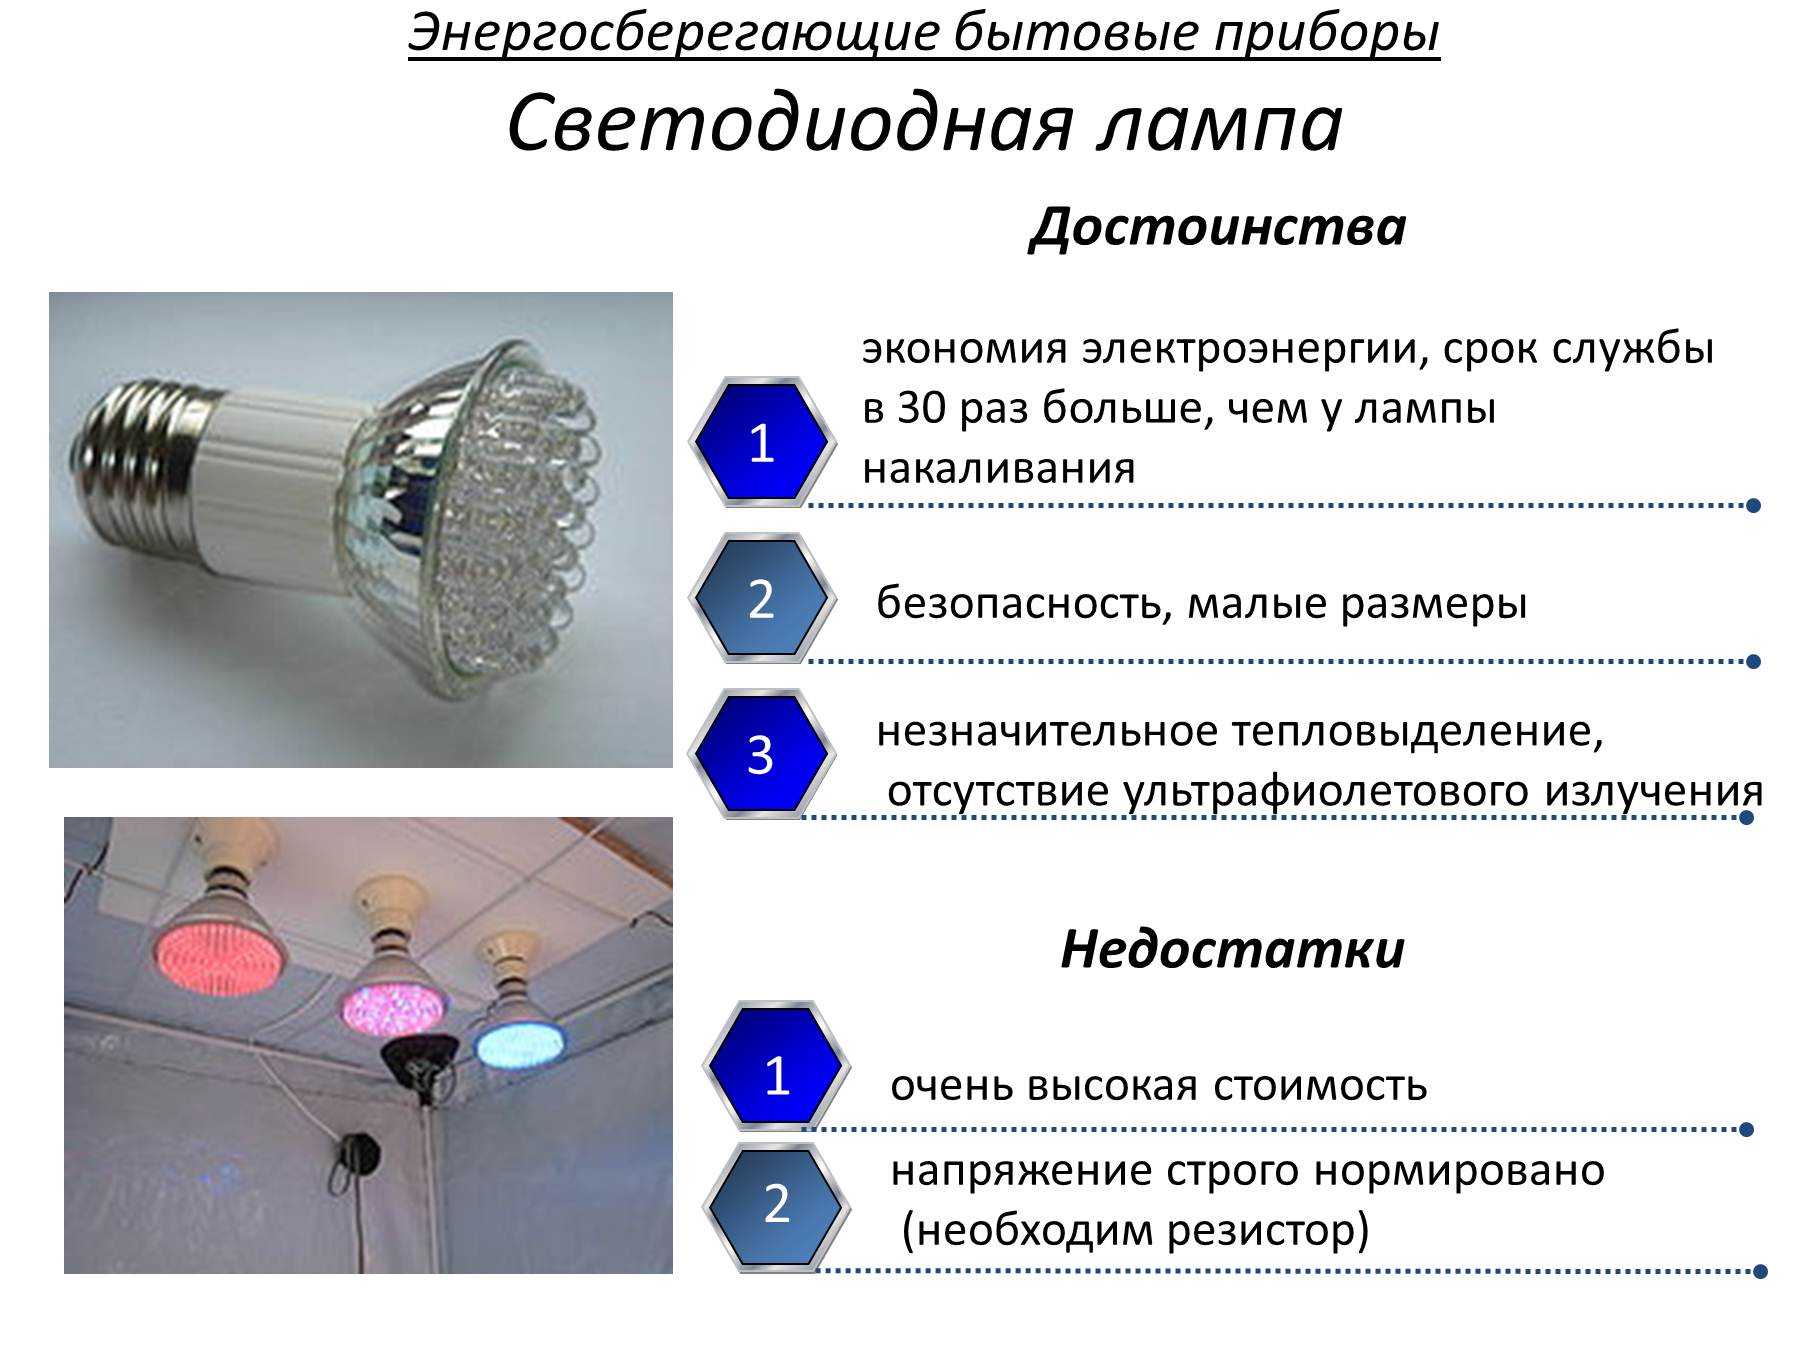 Вред и польза от энергосберегающих люминесцентных ламп